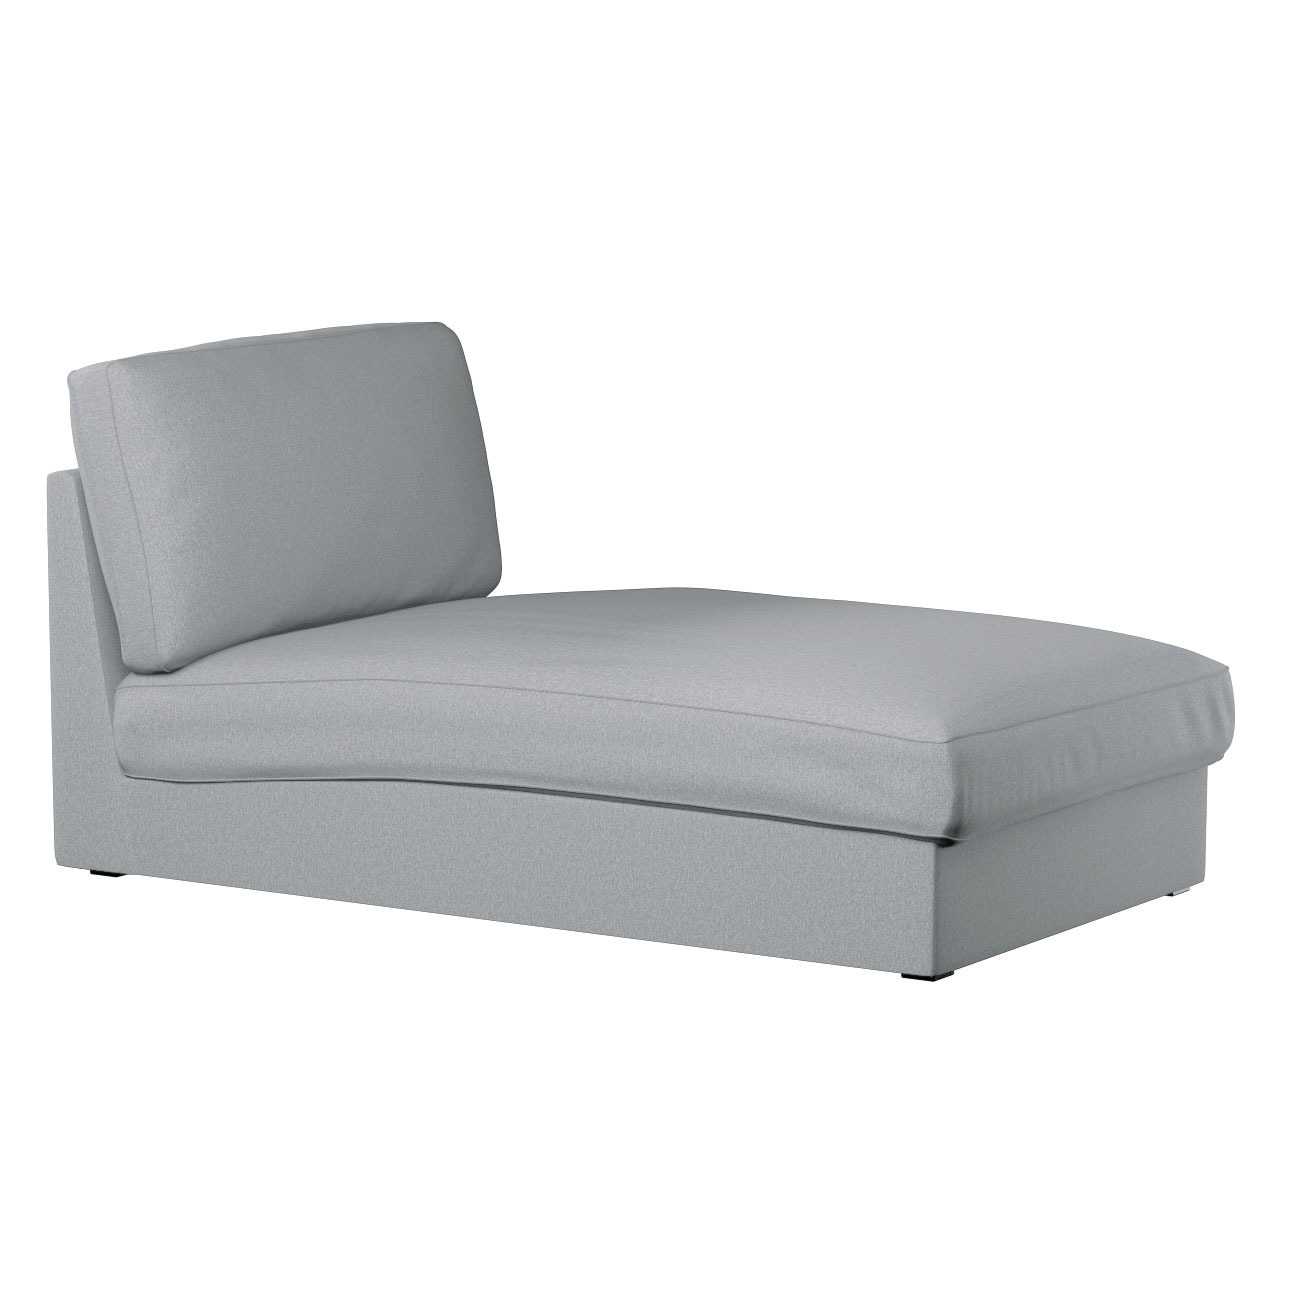 Bezug für Kivik Recamiere Sofa, grau, Bezug für Kivik Recamiere, Amsterdam günstig online kaufen